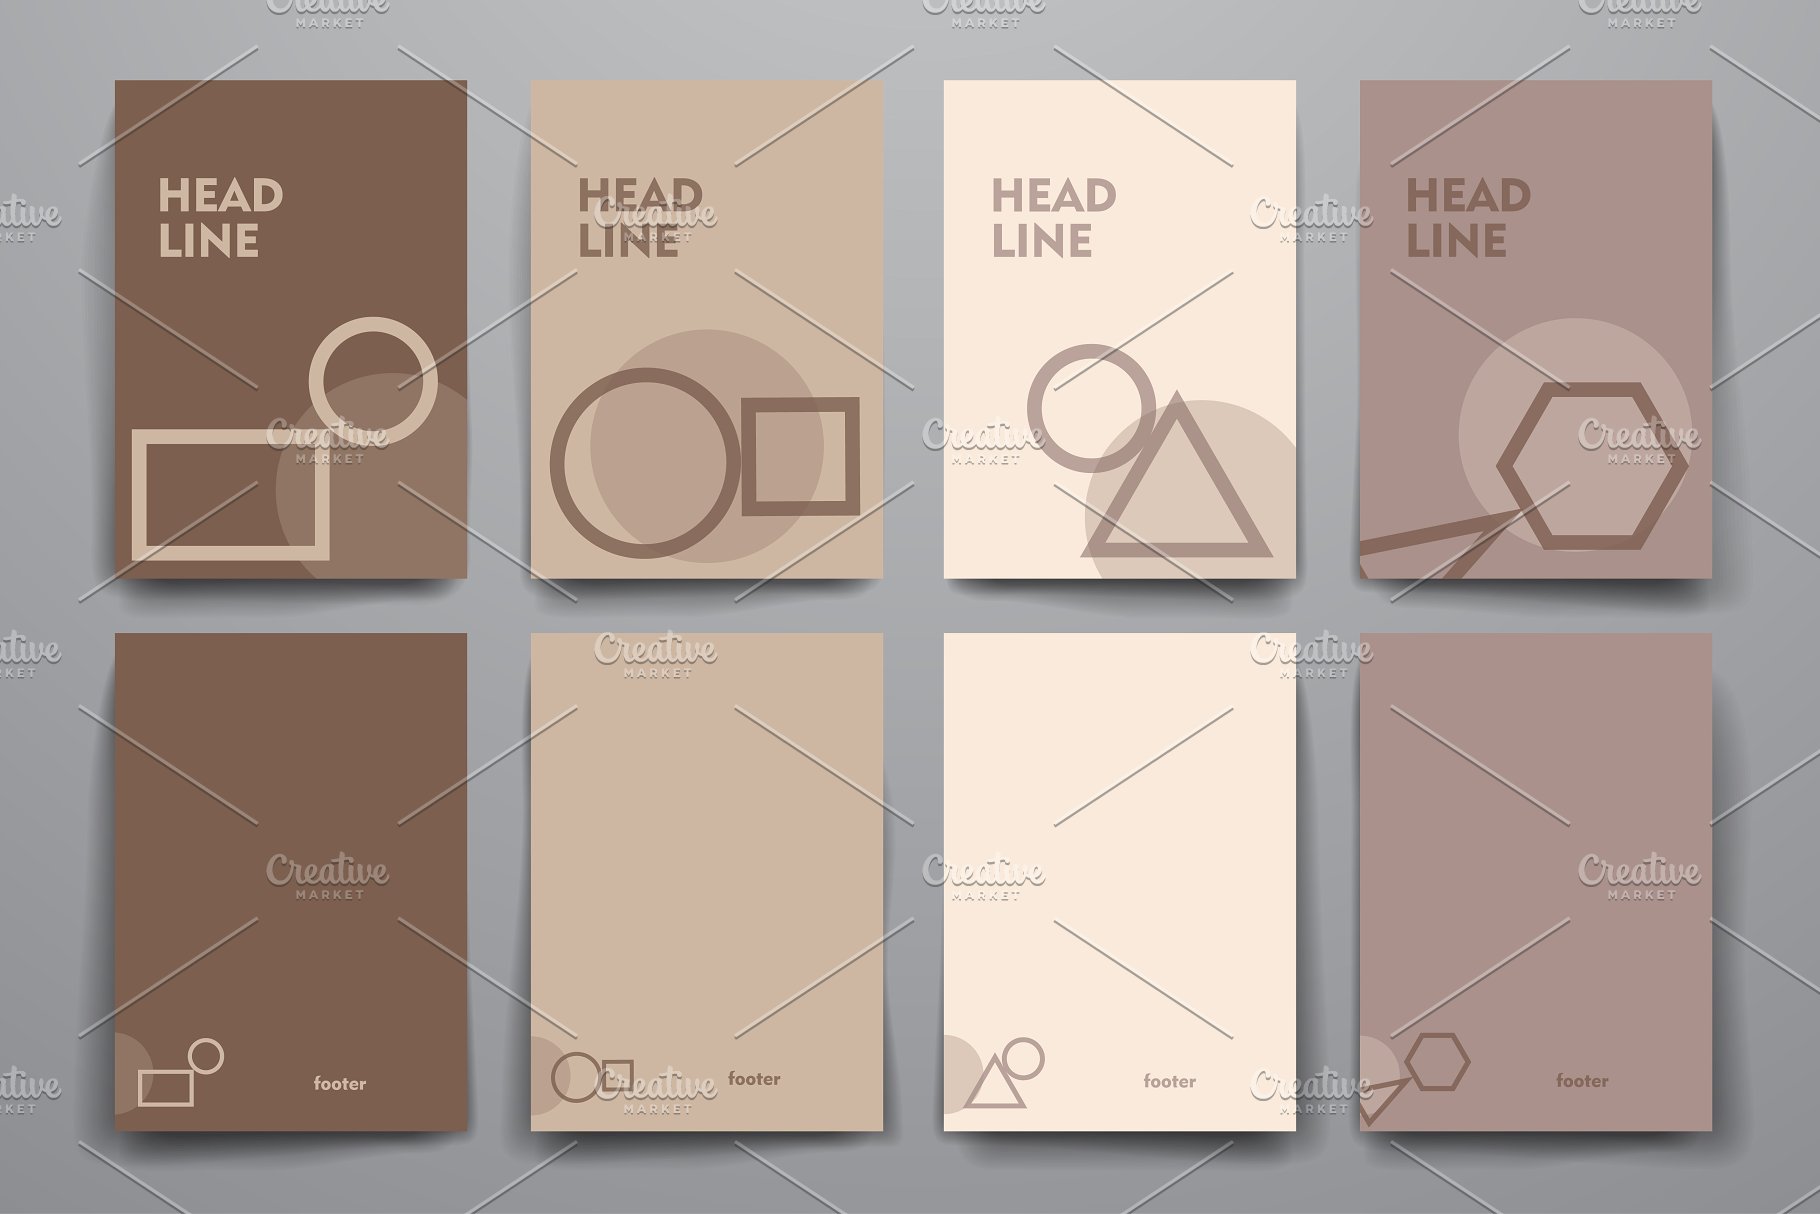 简约小册子传单设计模板 Set of Simple Brochures插图(8)